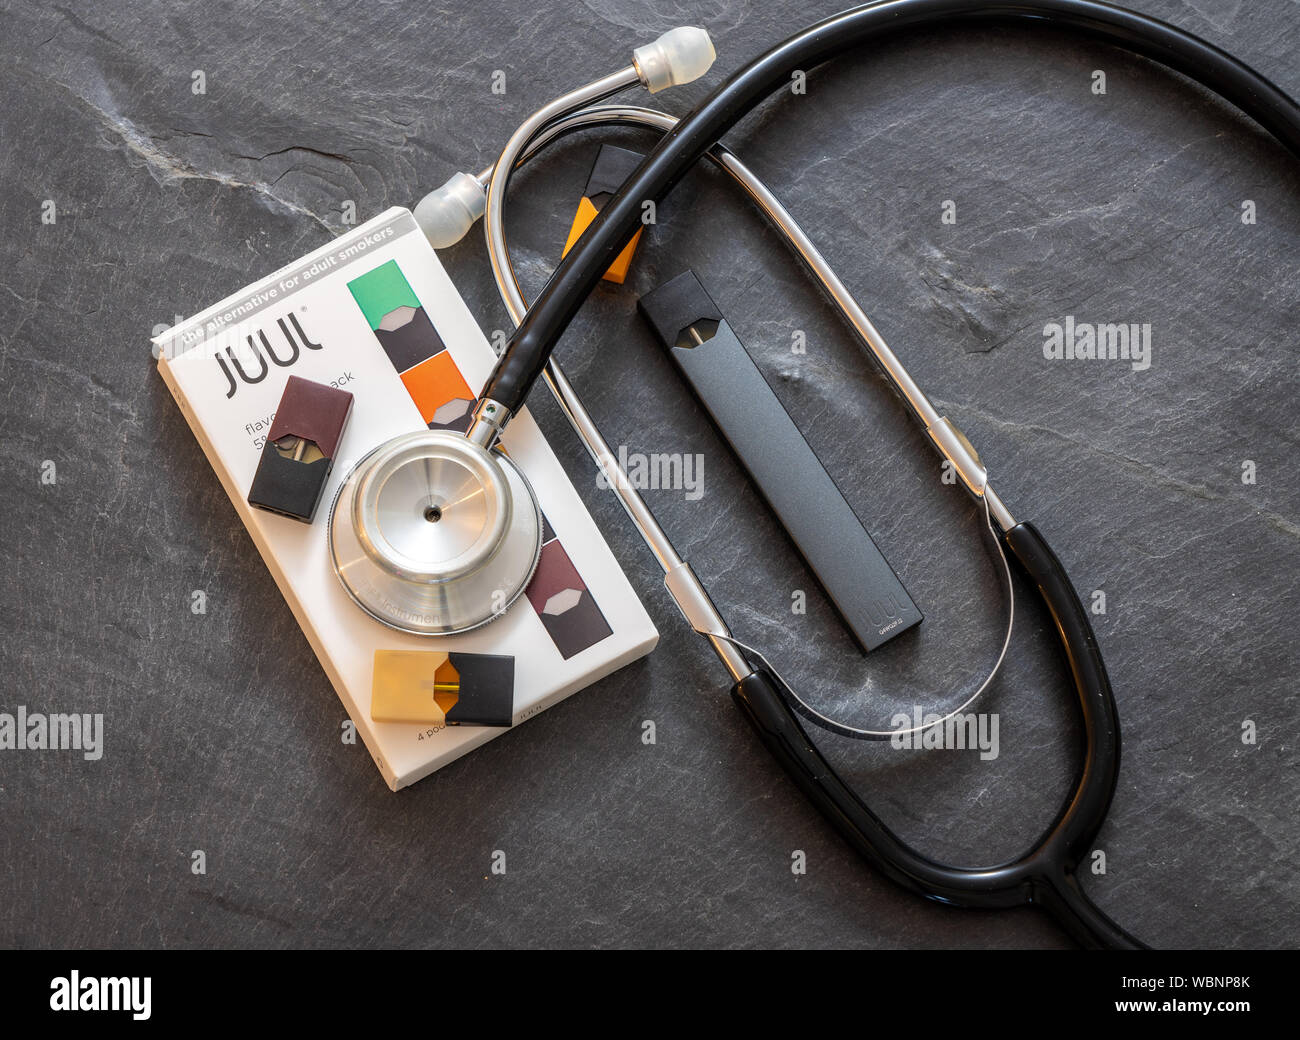 Casella azienda JUUL dispensatore di nicotina e baccelli con uno stetoscopio Foto Stock